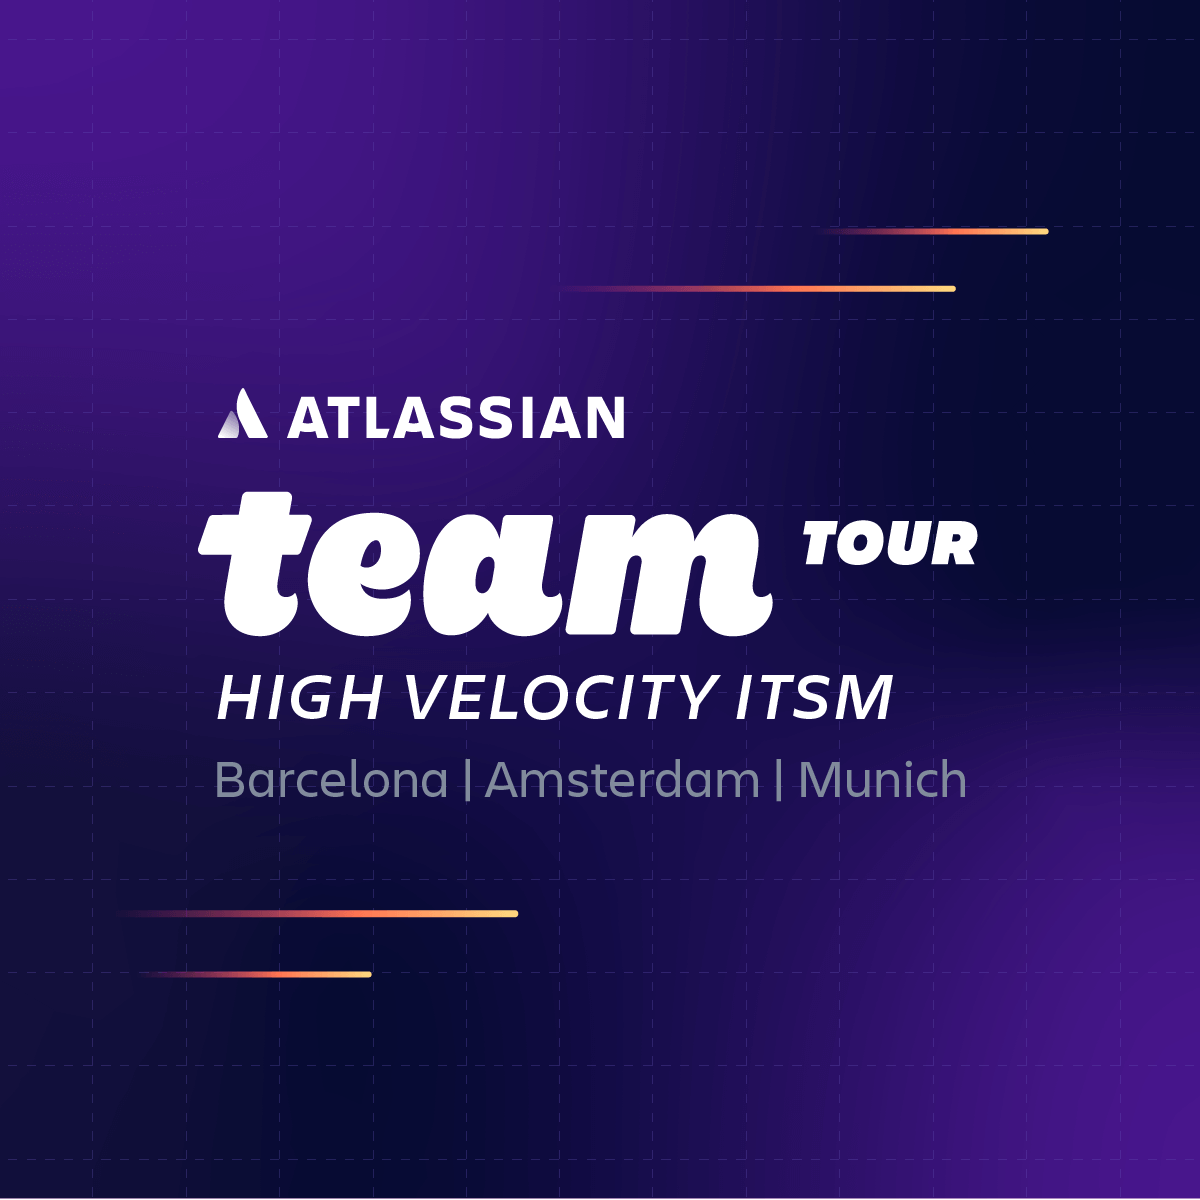 High Velocity ITSM от Atlassian на Team '23